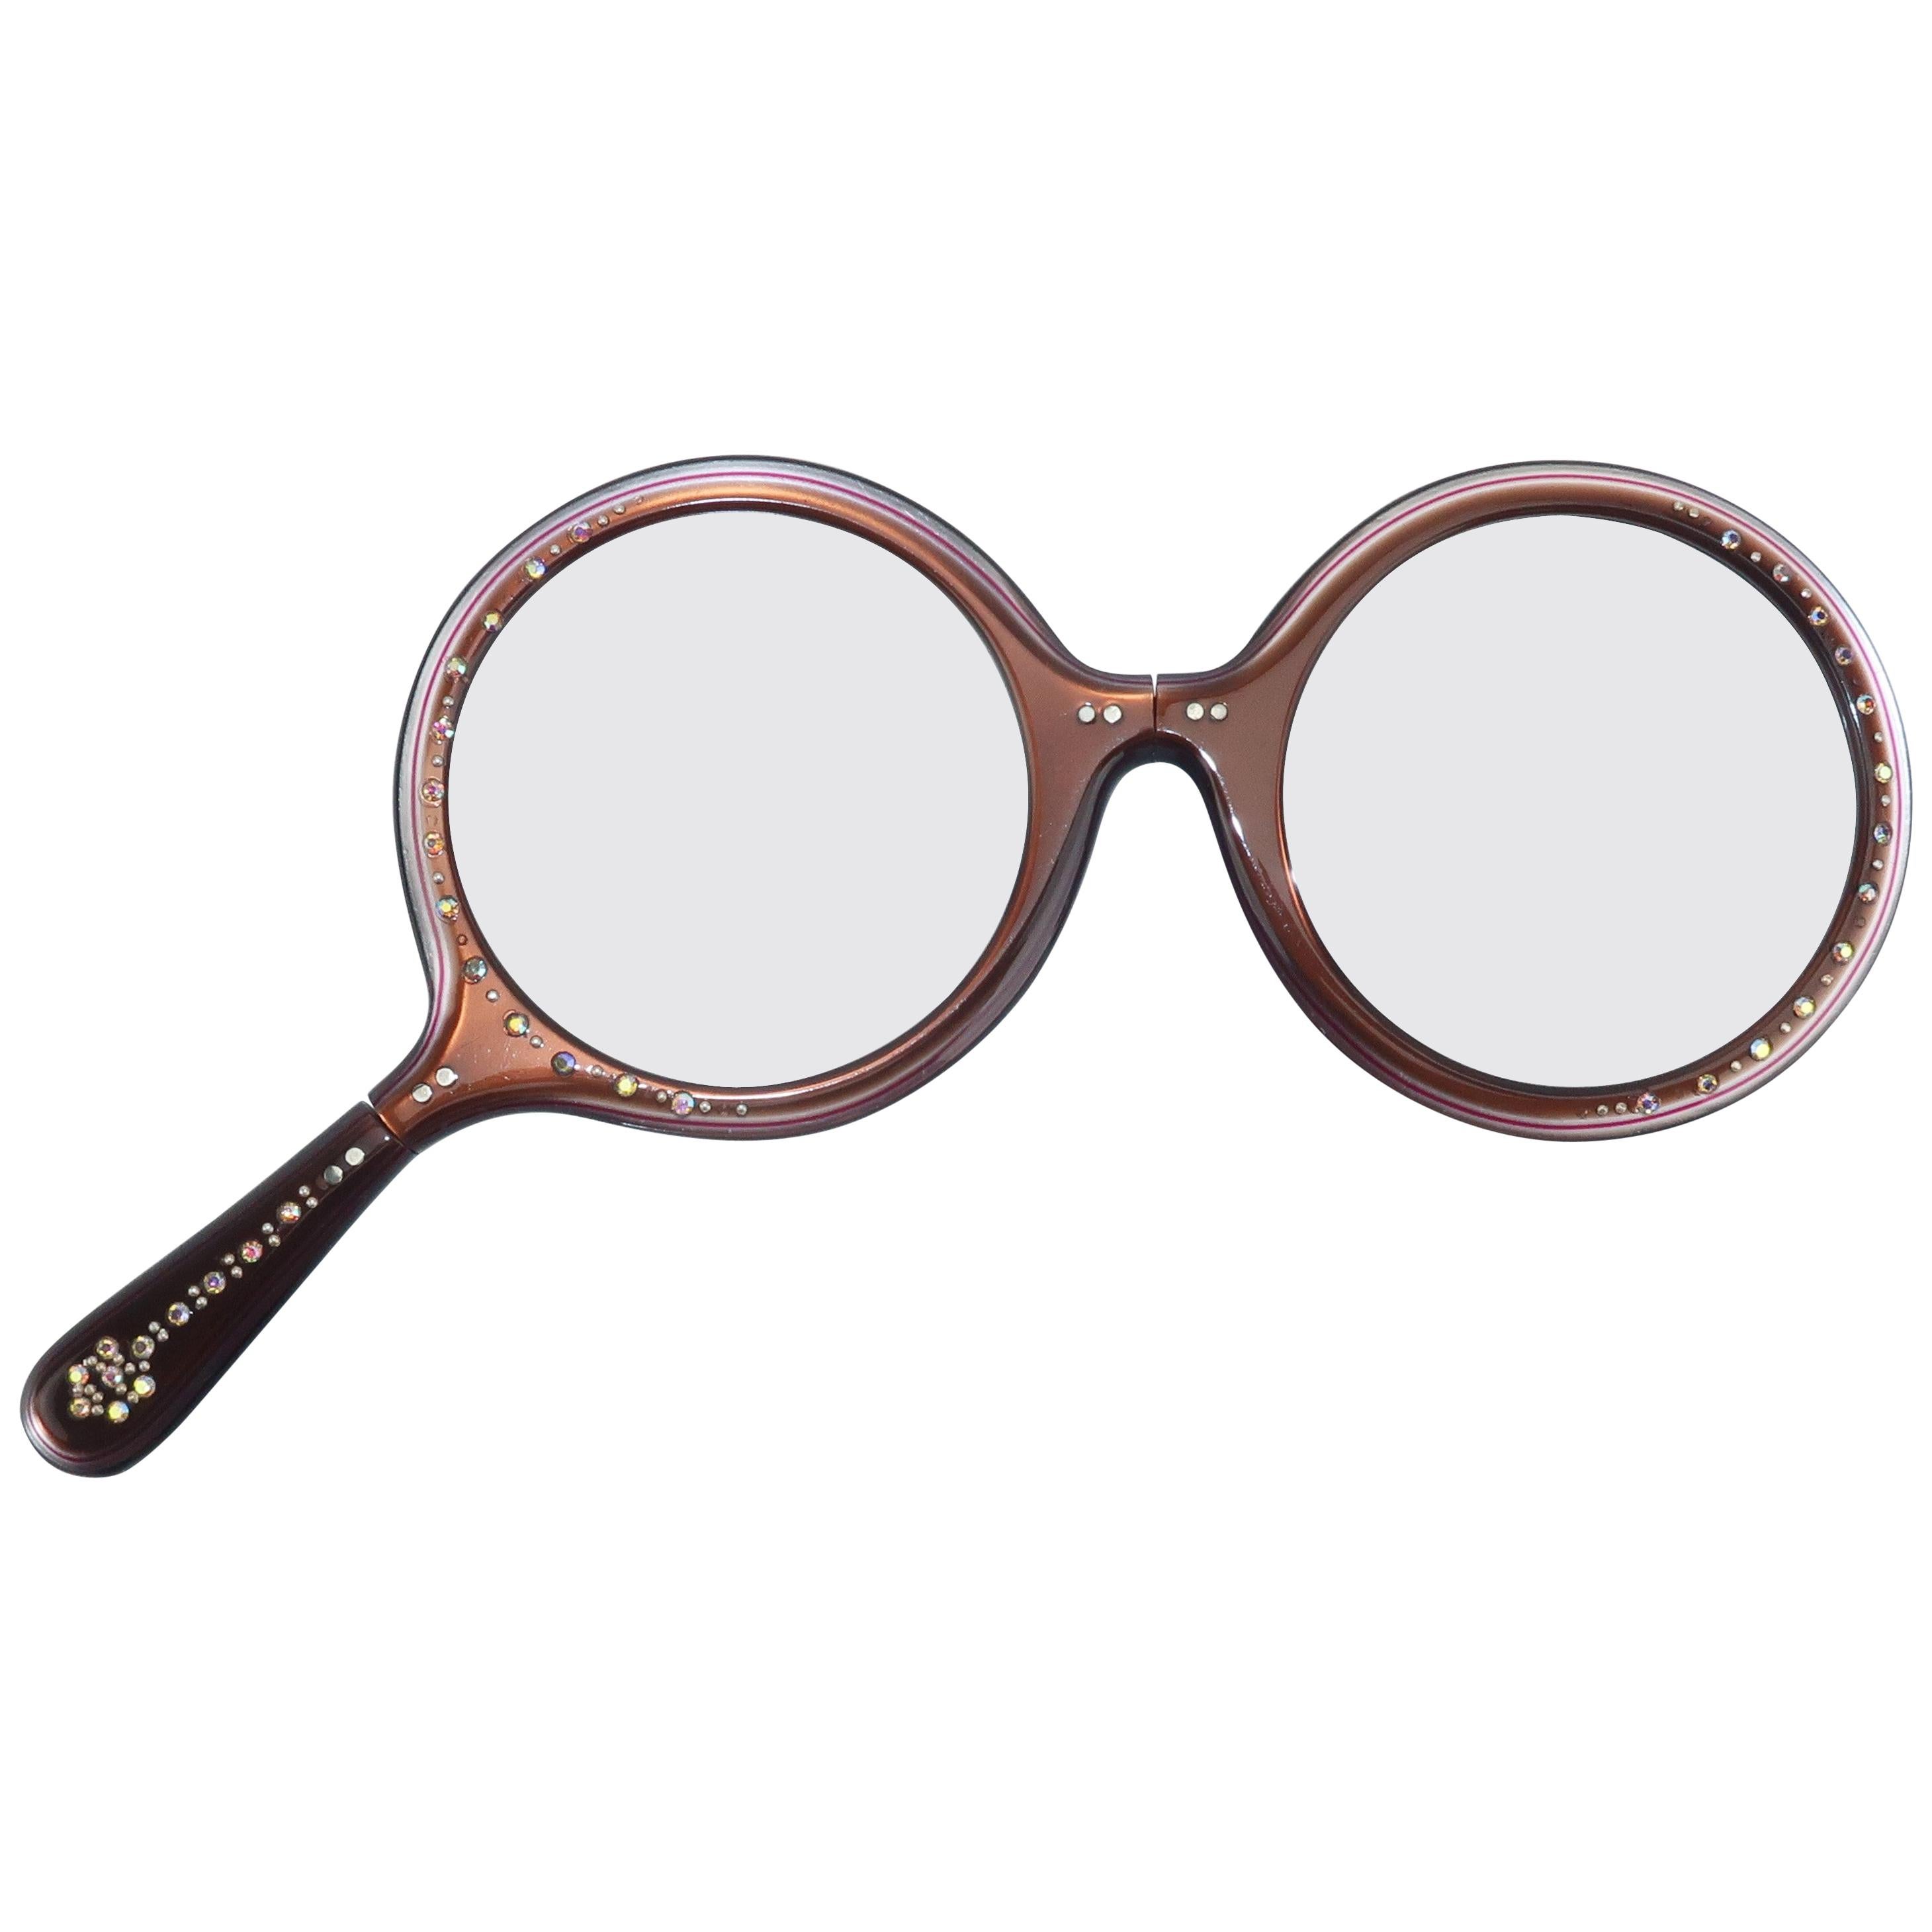 Rhinestone Encrusted Brown Lorgnette Reader Glasses, 1960's